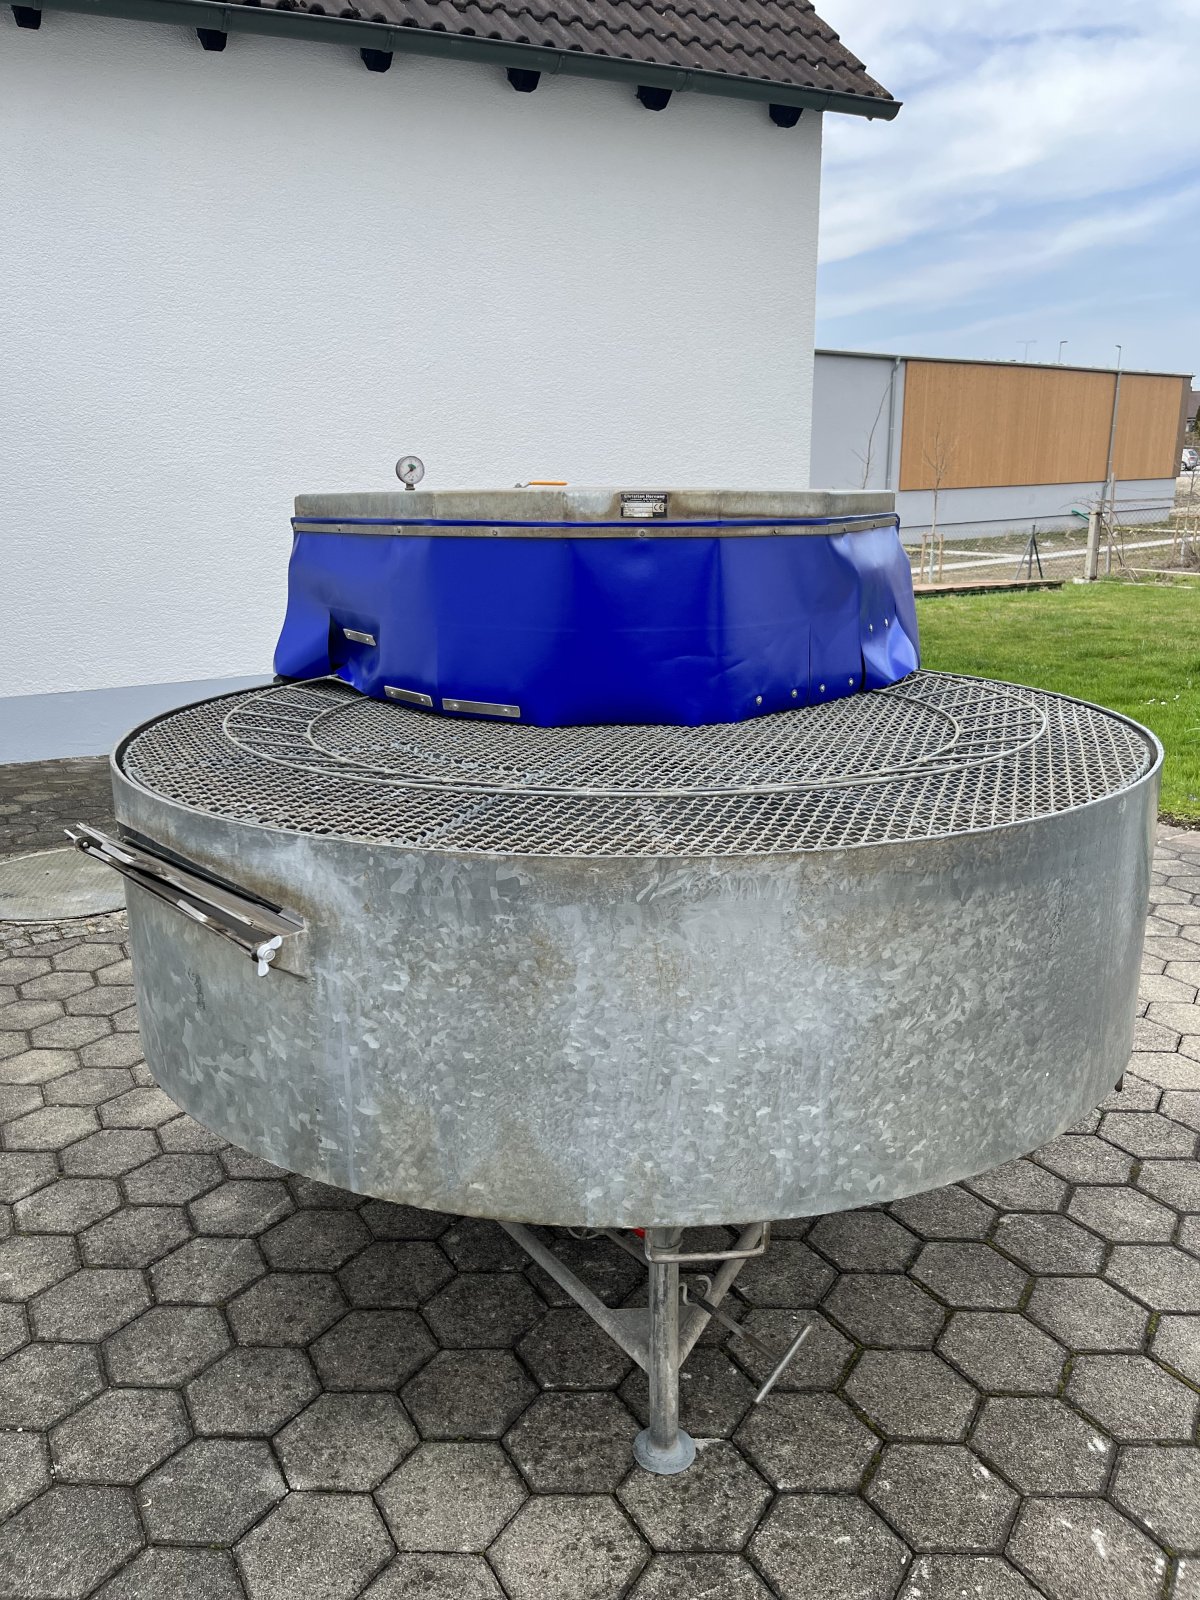 Waschmaschine des Typs Hornung Gemüsewascher, Gebrauchtmaschine in Friedberg (Bild 2)